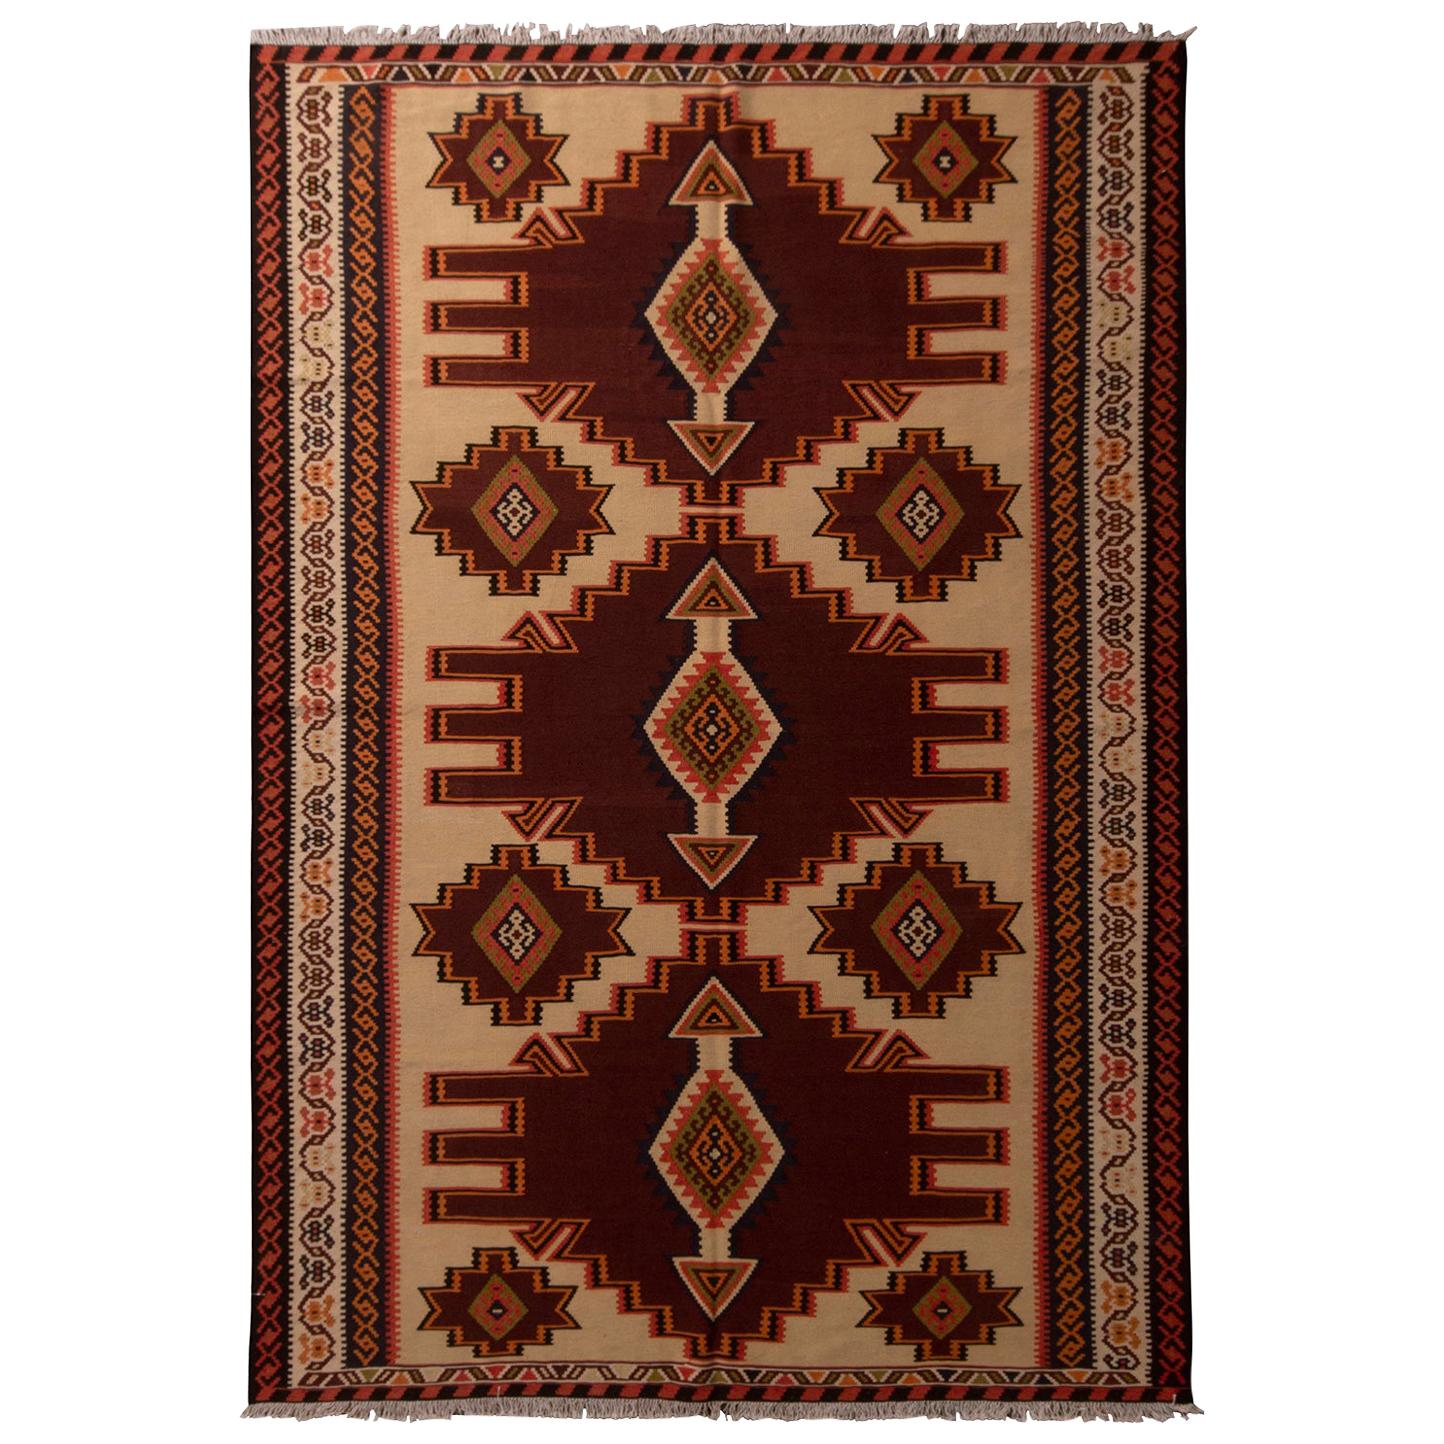 Vintage Geometric Beige Brown & Red Wool Persian Azerbaijan Kilim by Rug & Kilim